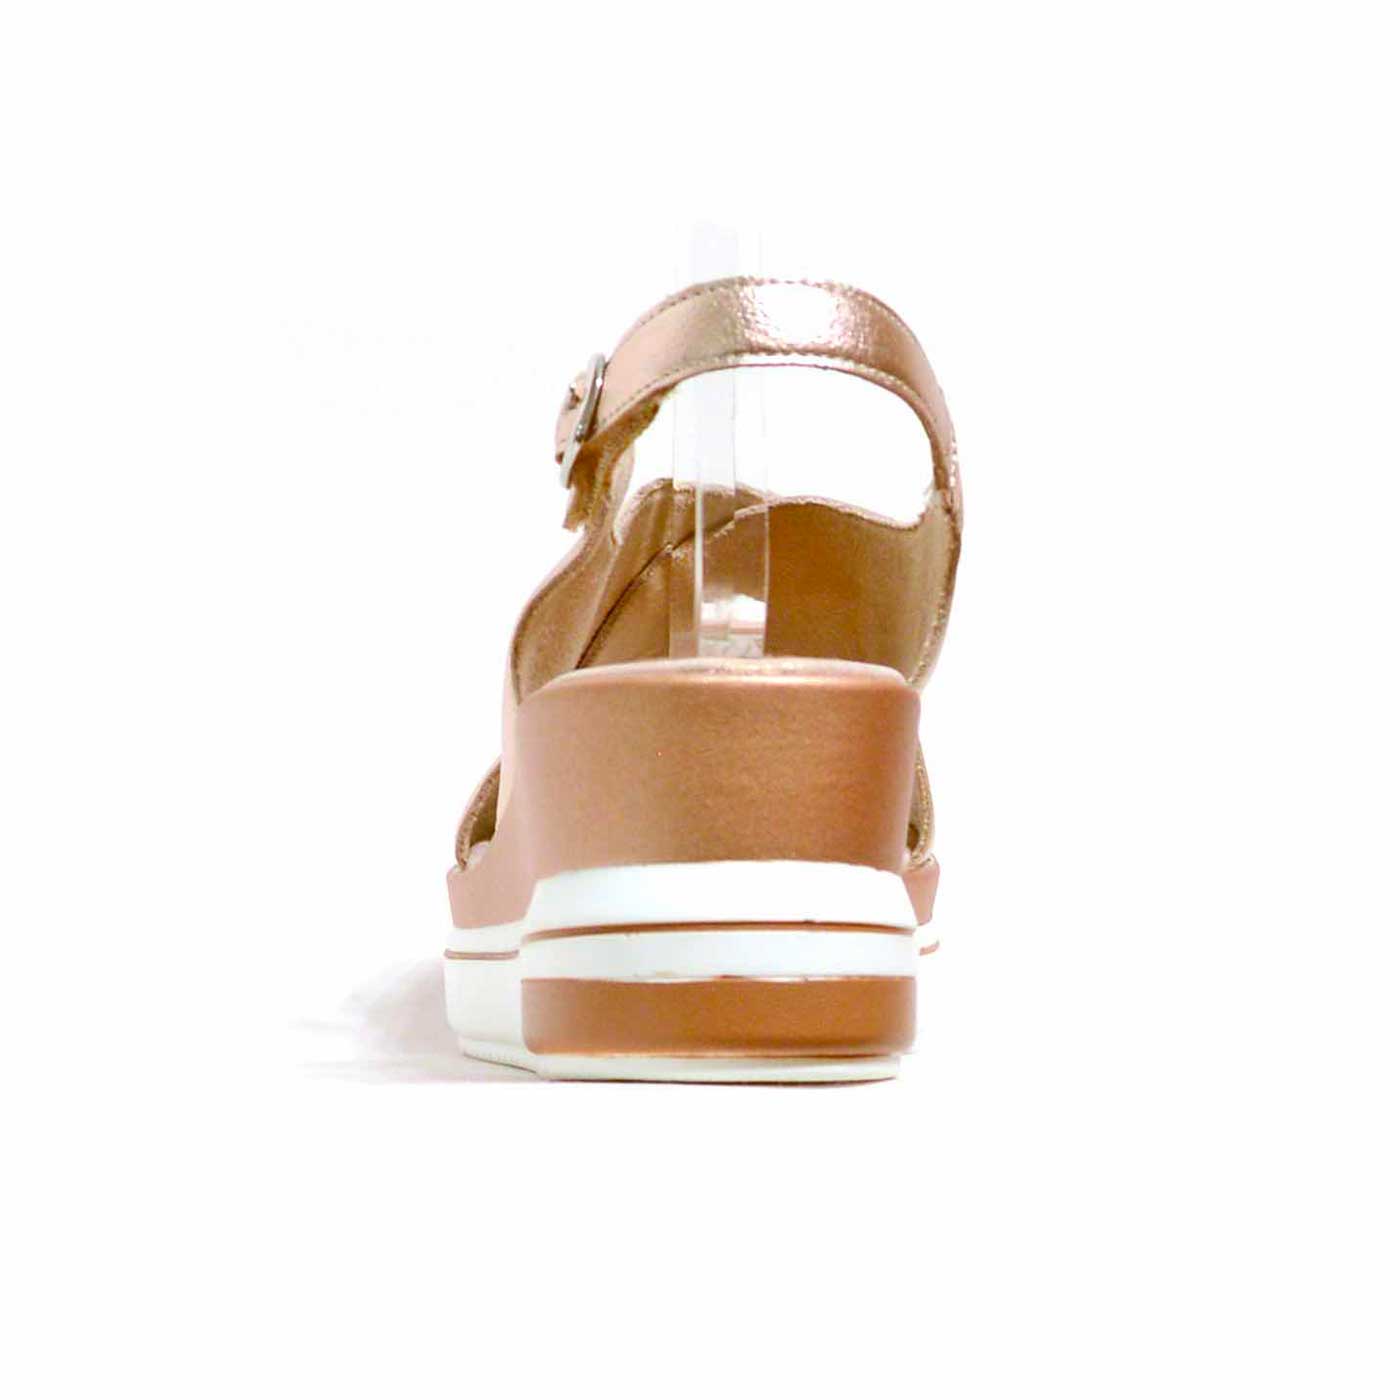 sandalettes cuir grainé bronze metallise, chaussures femme grande taille